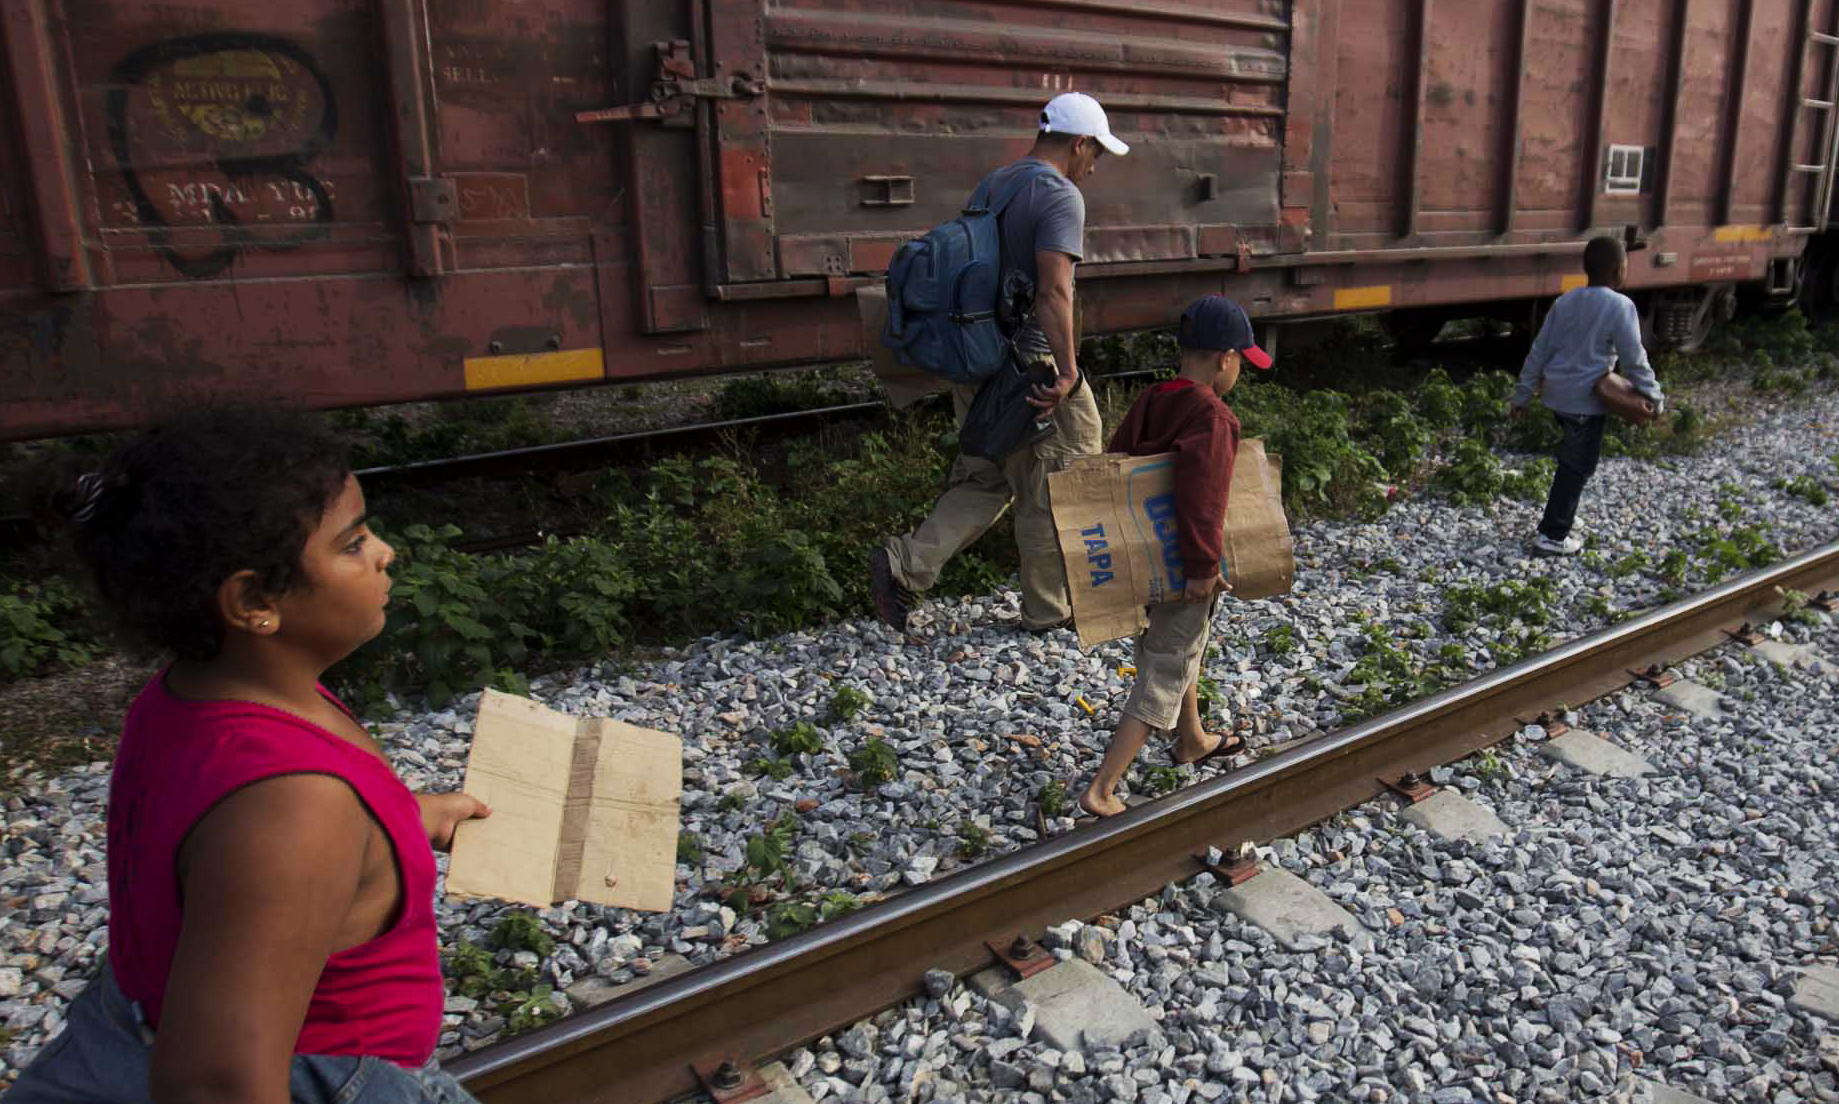 Over 100 Migrant Children Returned To ‘Horrific’ Border Station